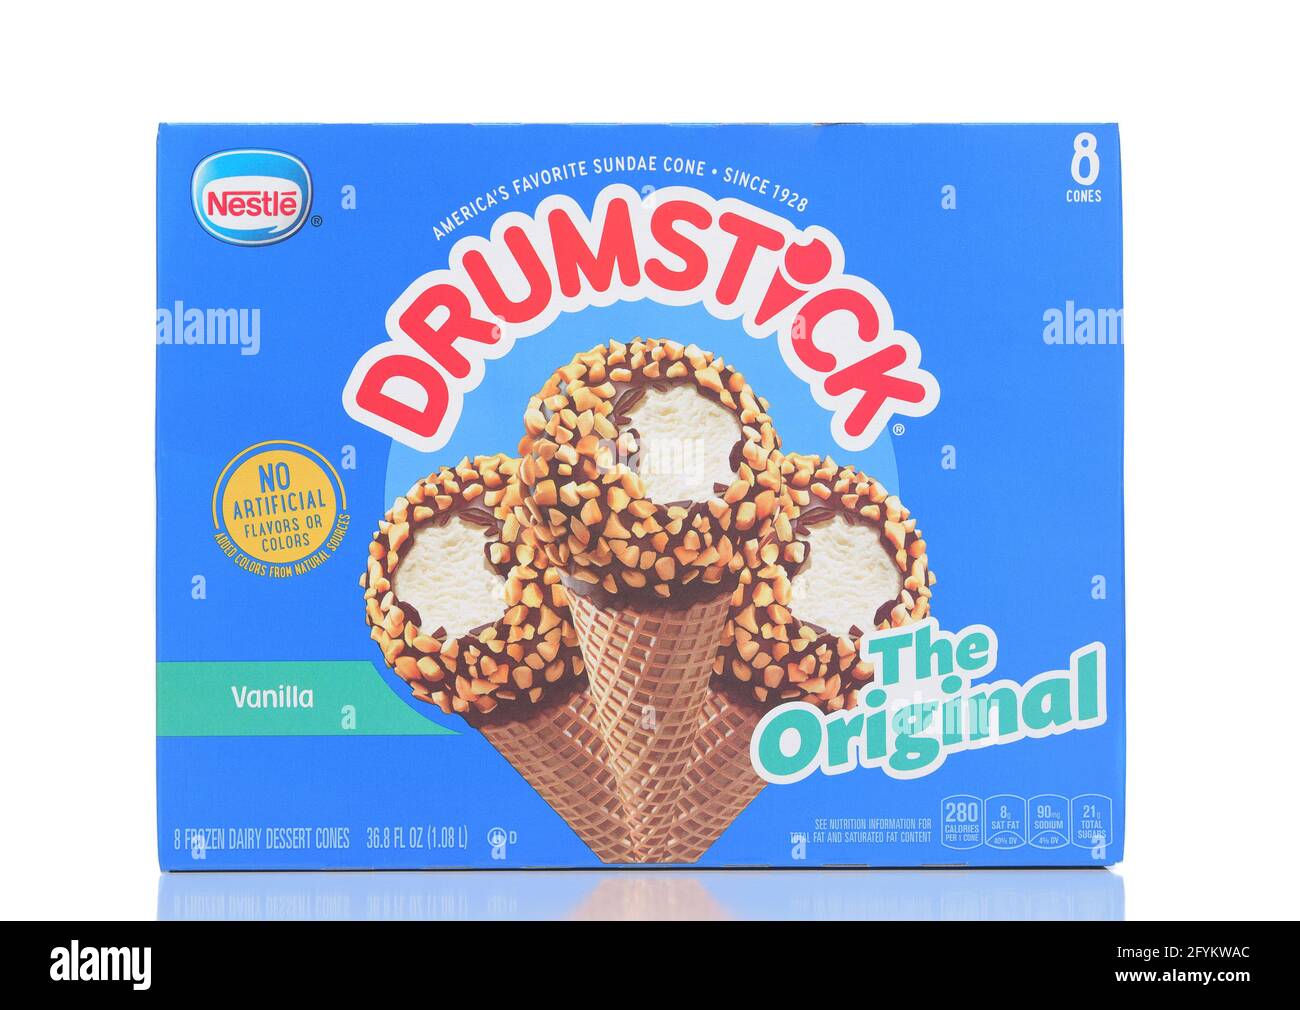 IRVINE, CALIFORNIA - 28 MAGGIO 2021: Una confezione da 8 pezzi della novità originale del gelato di marca Vanilla Drumstick di Nestle. Foto Stock